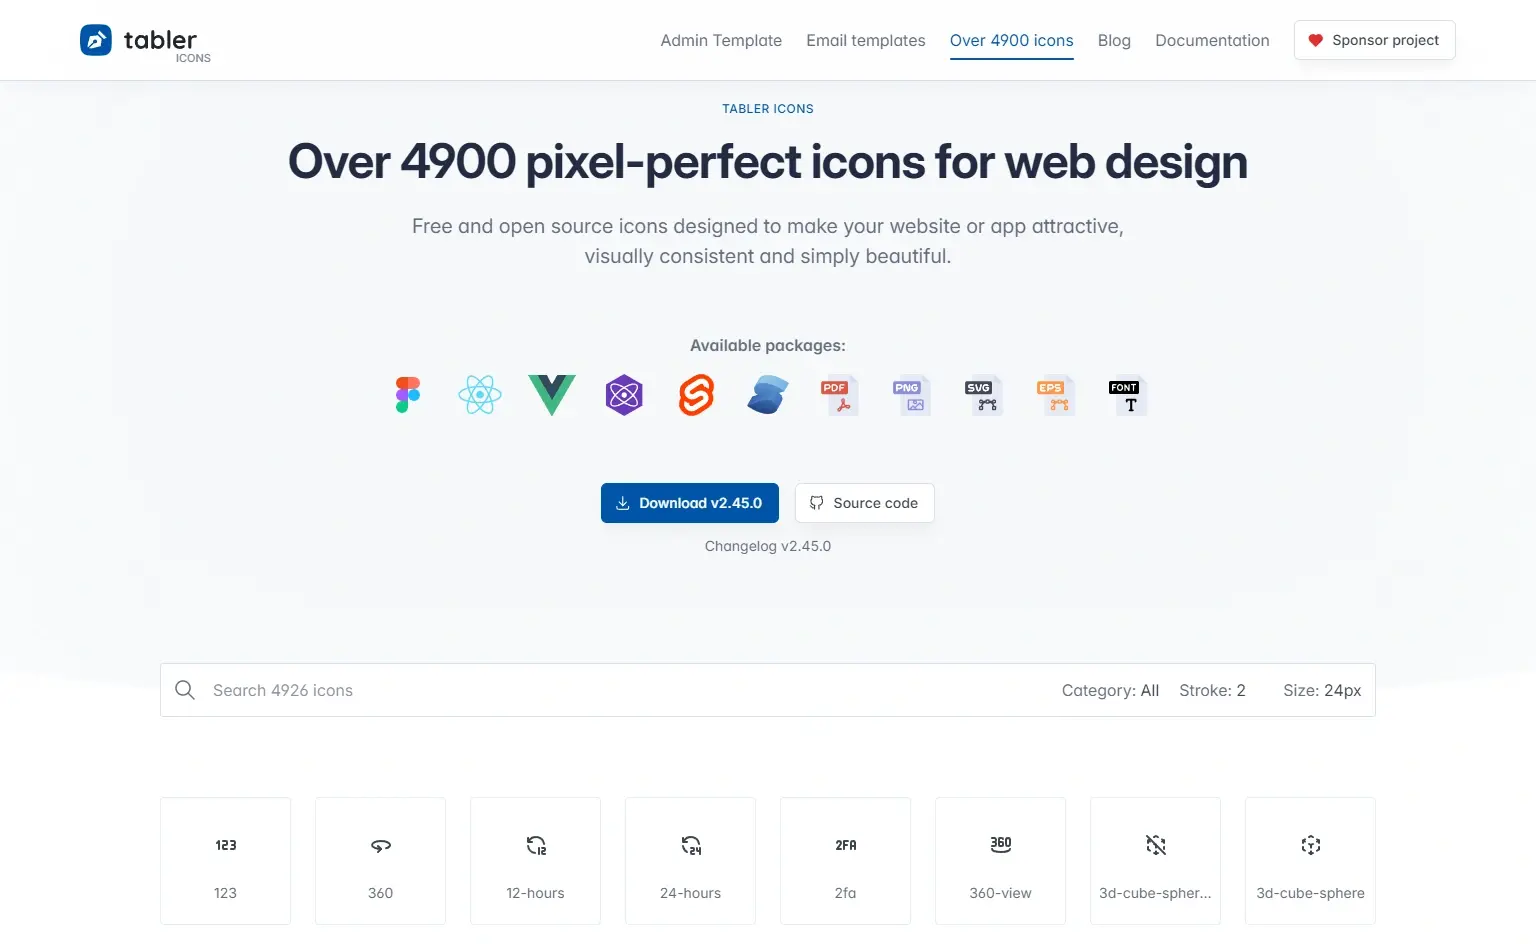 Blogduwebdesign ressources web sites telecharger icones gratuitement tabler icons